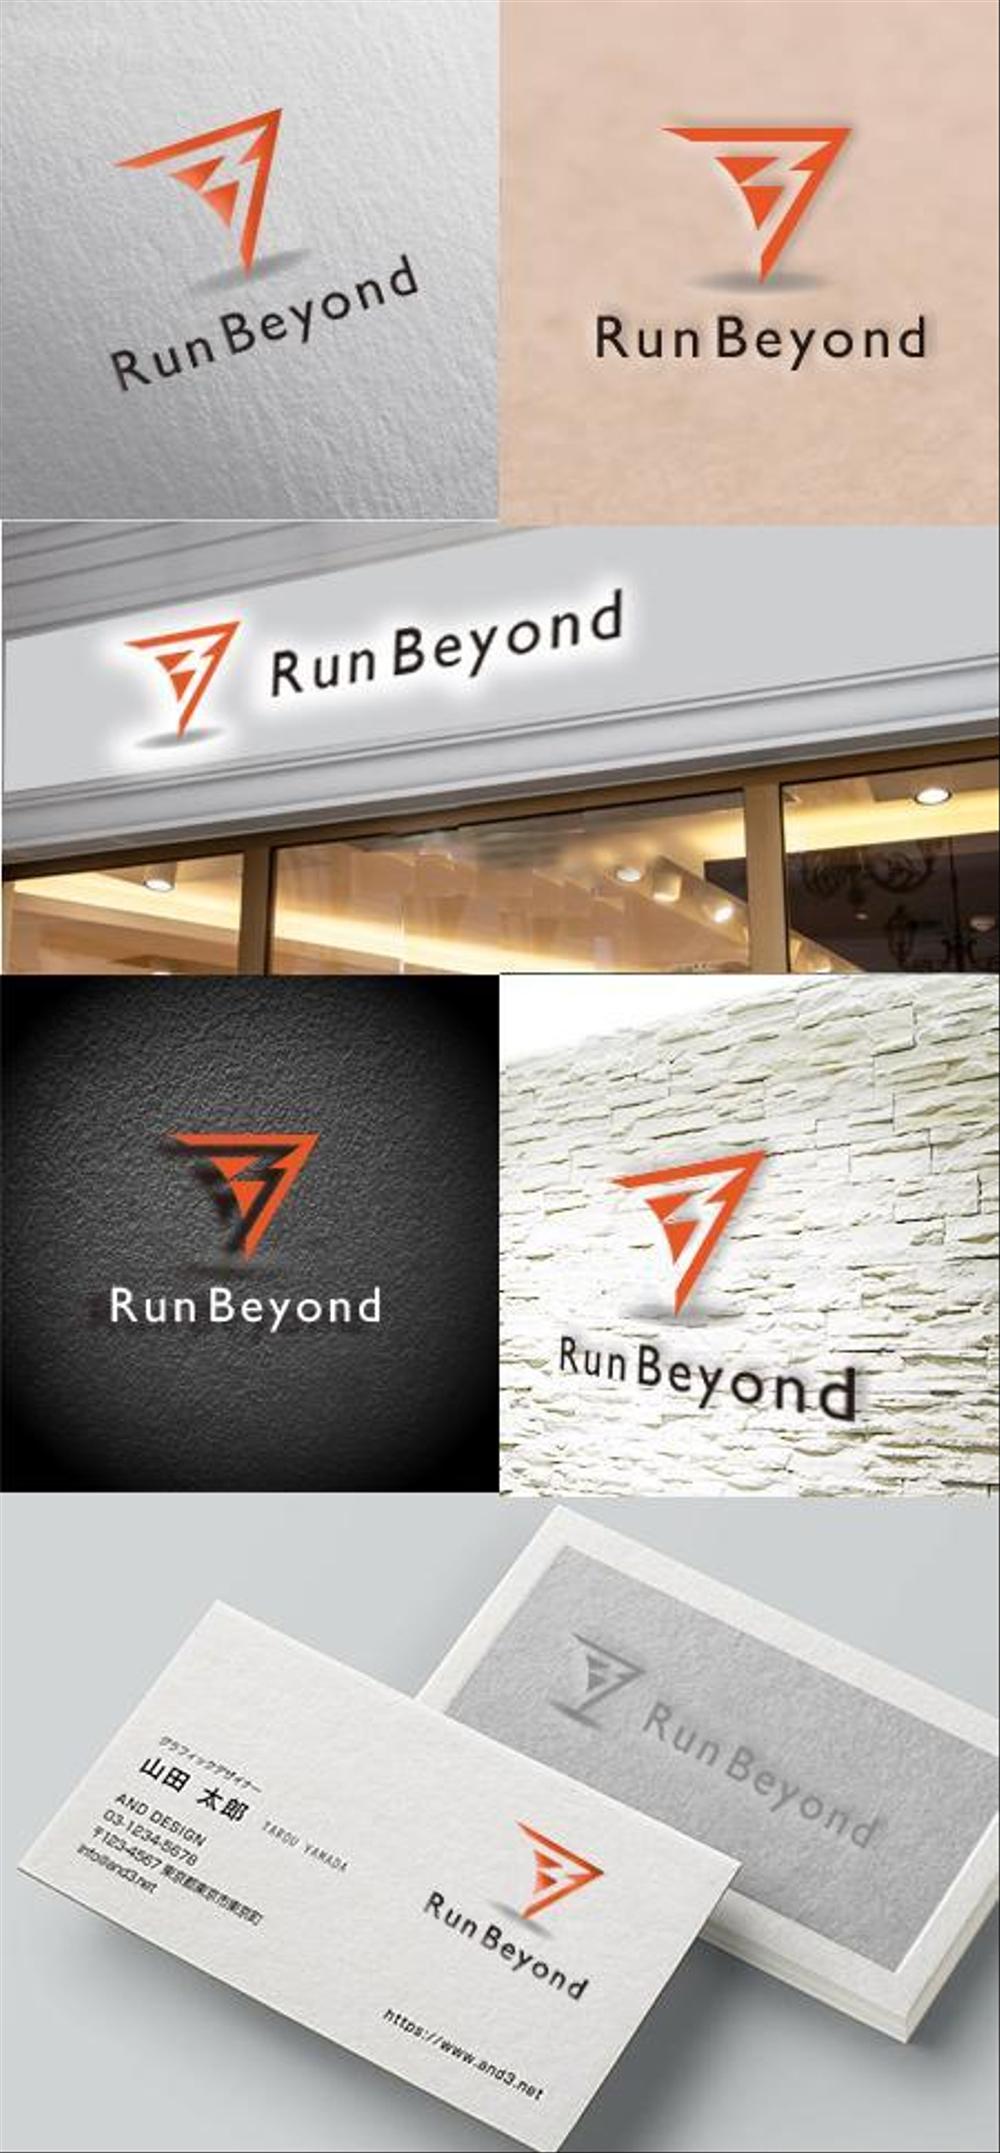 オンライン型マラソン大会参加アプリ「RunBeyond」のロゴ画像